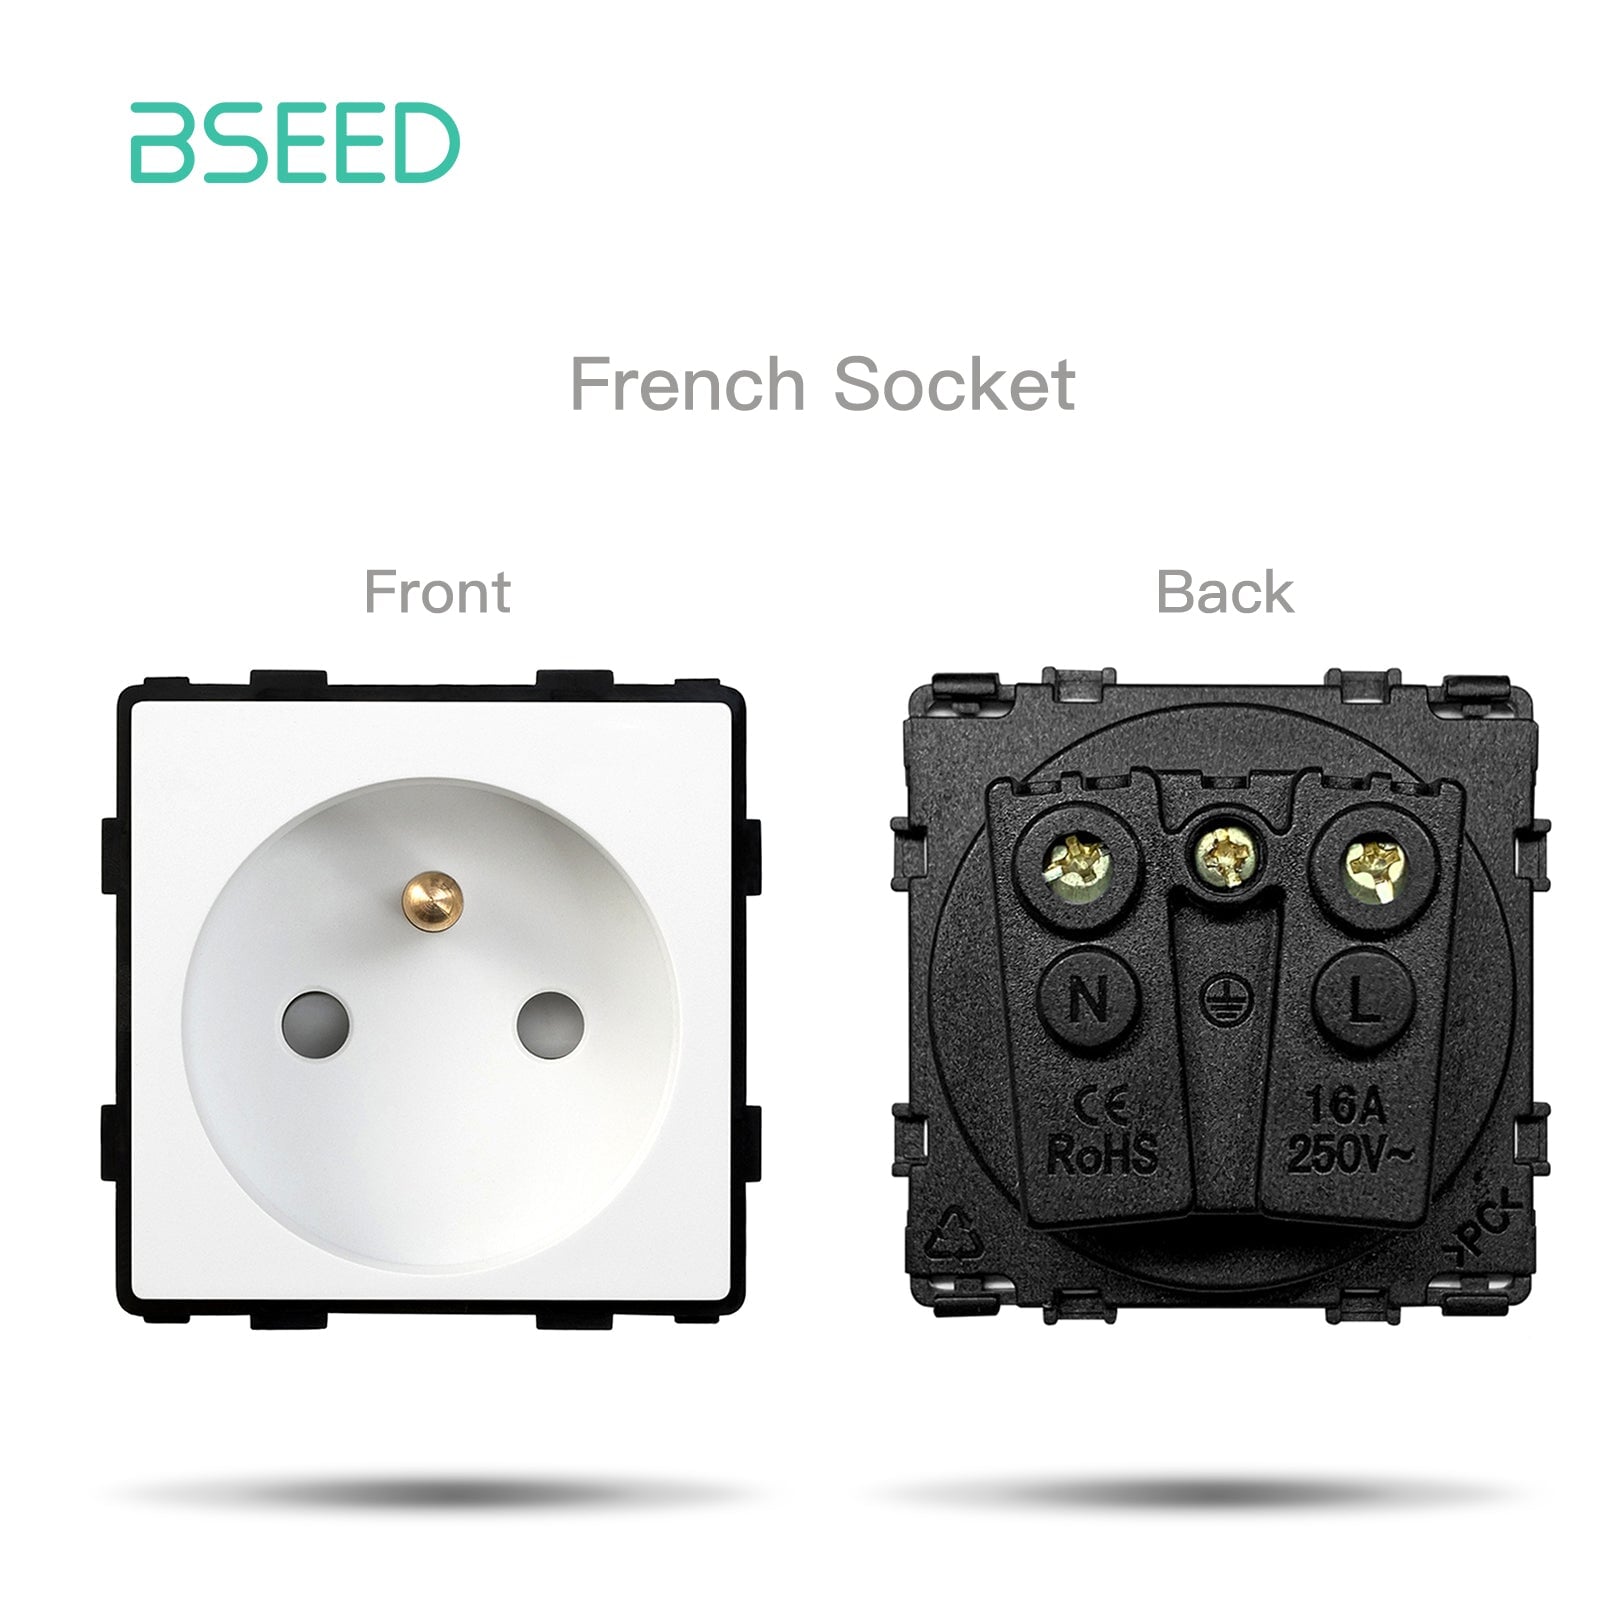 BSEED EU/FR/ UK/MF Standard Wall Socket Function Key Touch WiFi Zigbee type Power Outlets & Sockets Bseedswitch White FR Touch